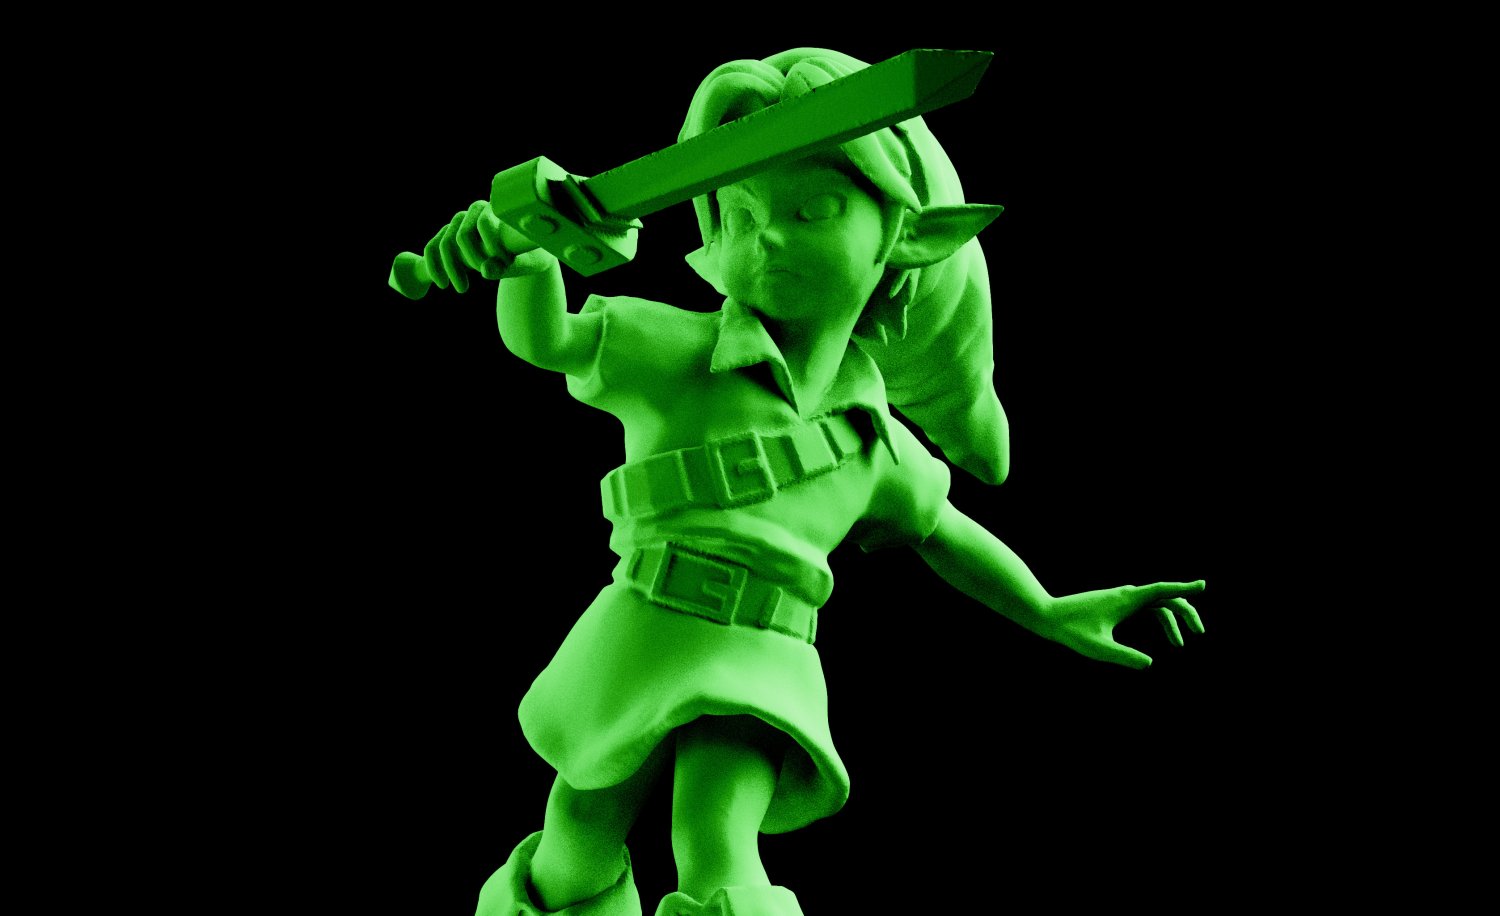 Legend of Zelda Link's Awakening Link Vinyl Figure Statue 5 Official  Nintendo